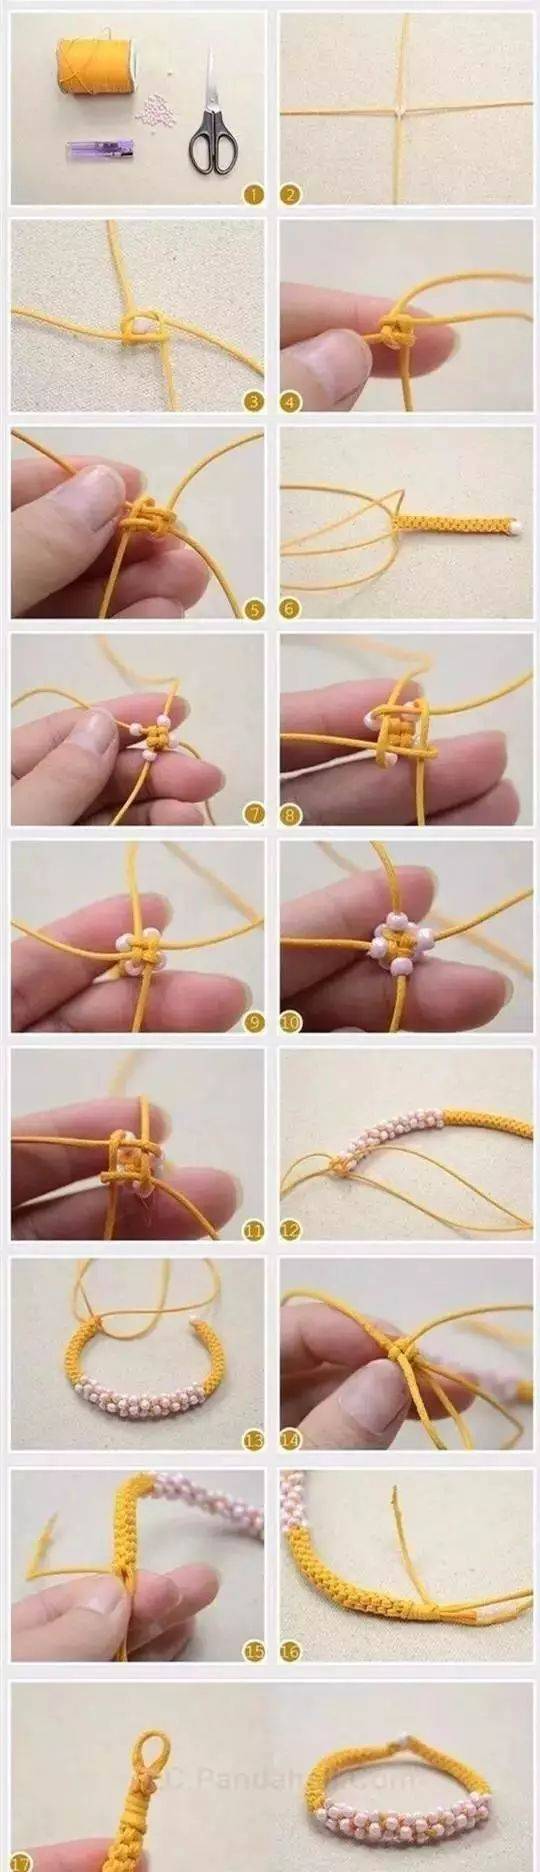 织手环教程毛线图片